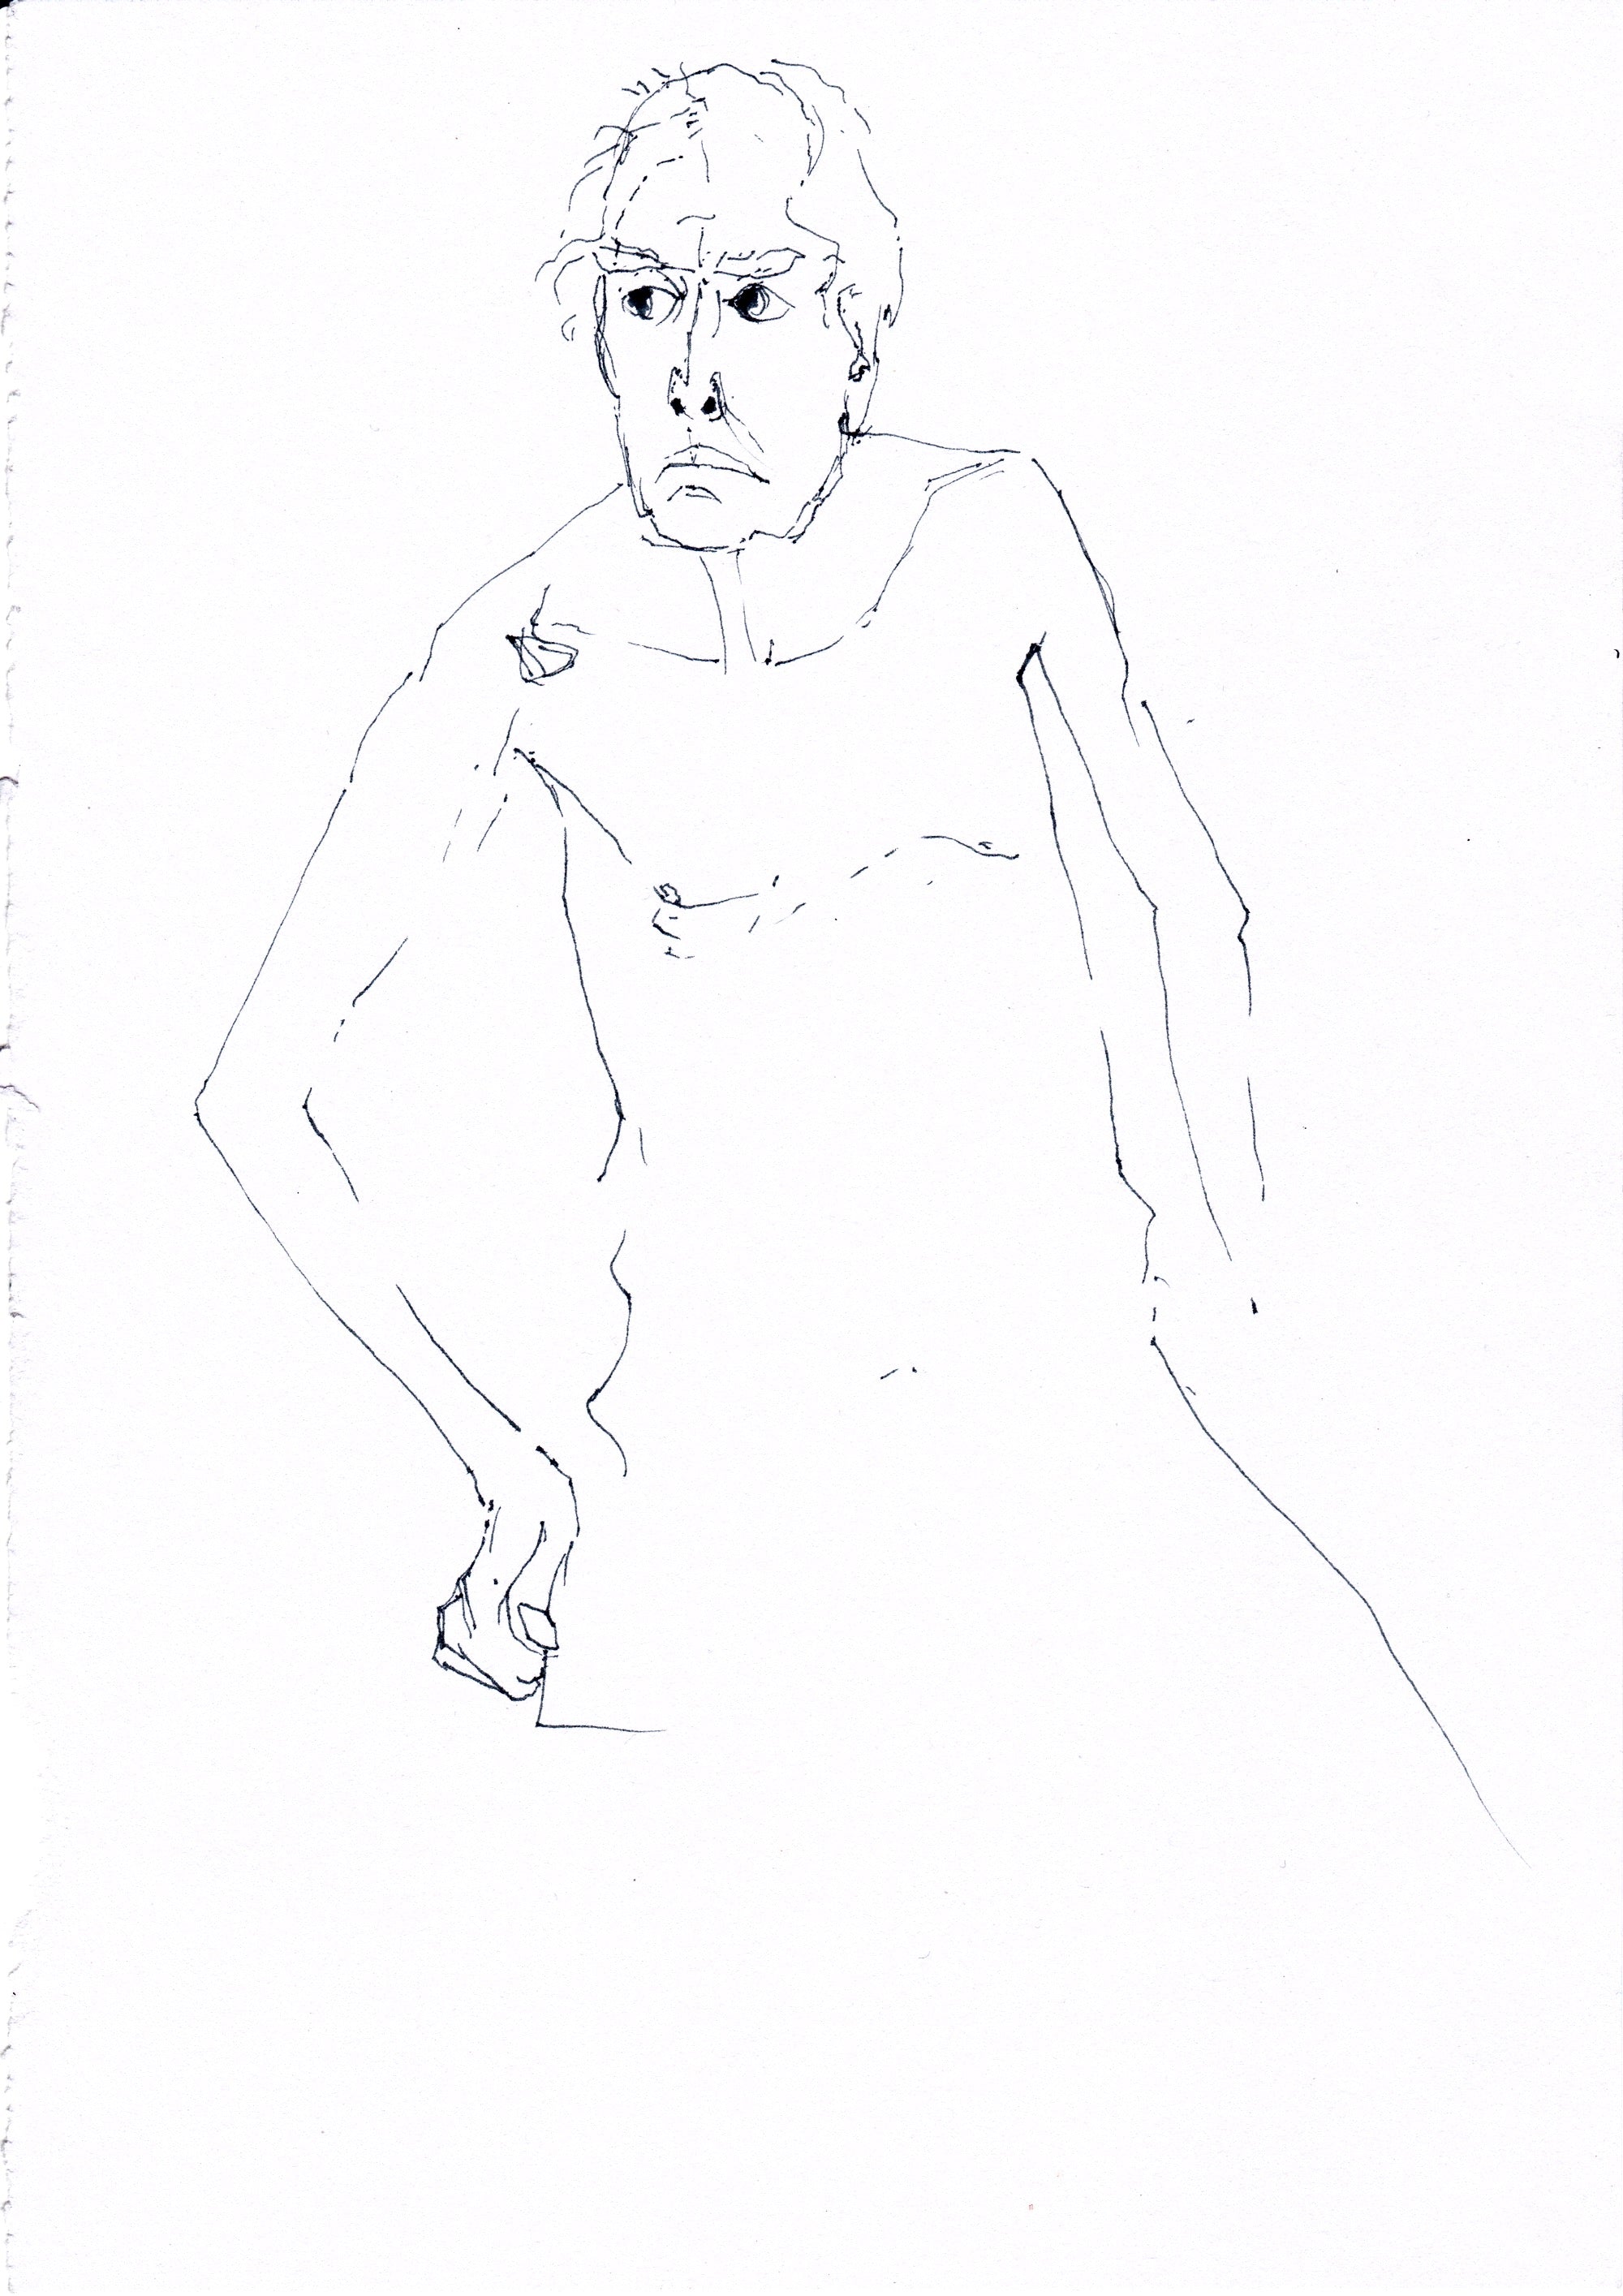 Drawing of a senior man.